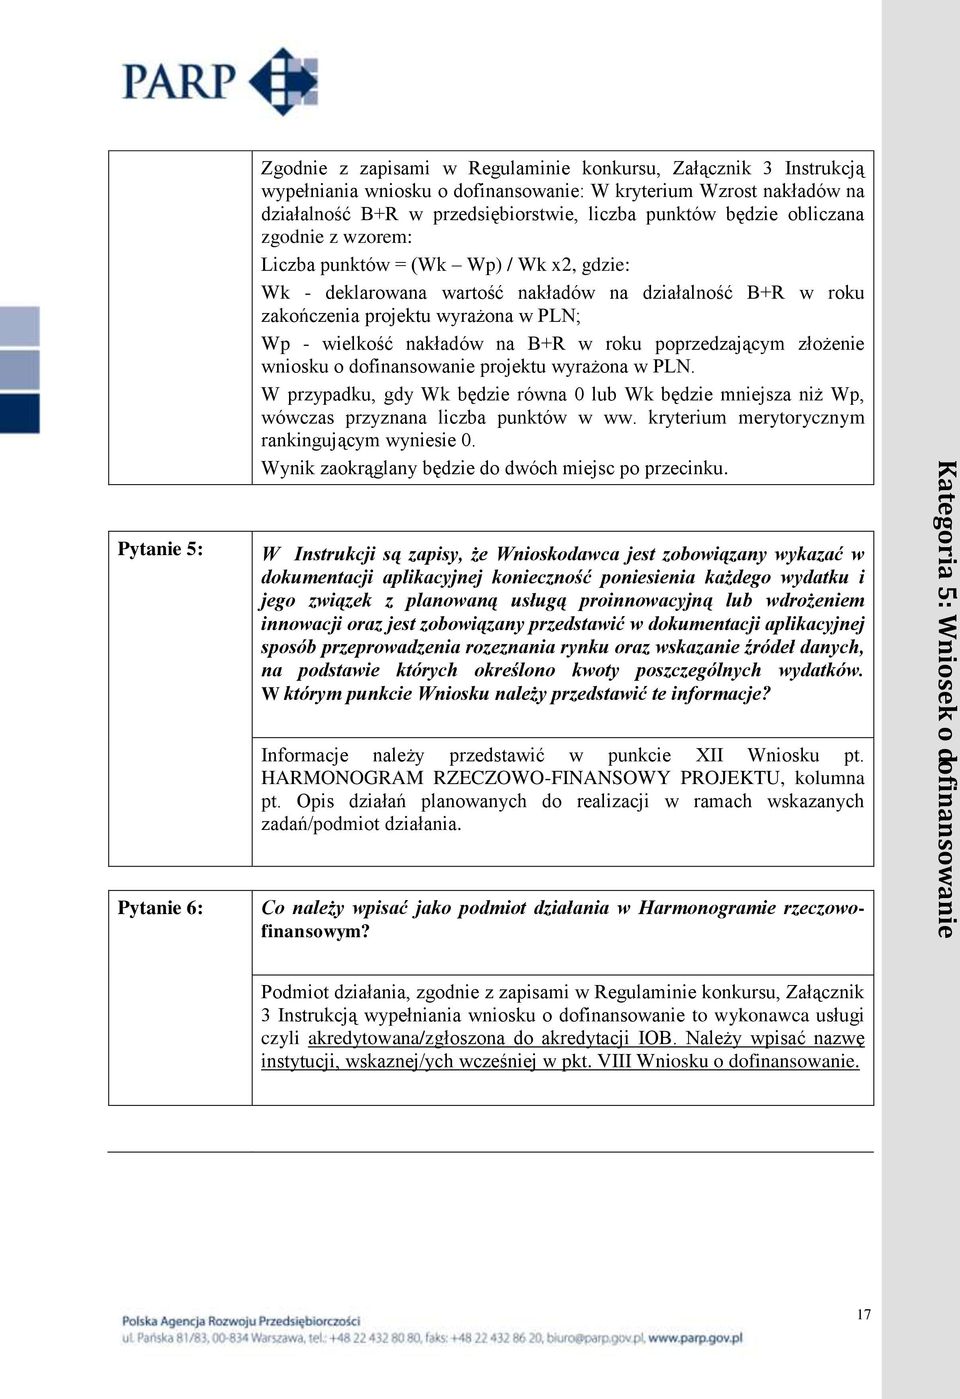 w PLN; Wp - wielkość nakładów na B+R w roku poprzedzającym złożenie wniosku o dofinansowanie projektu wyrażona w PLN.